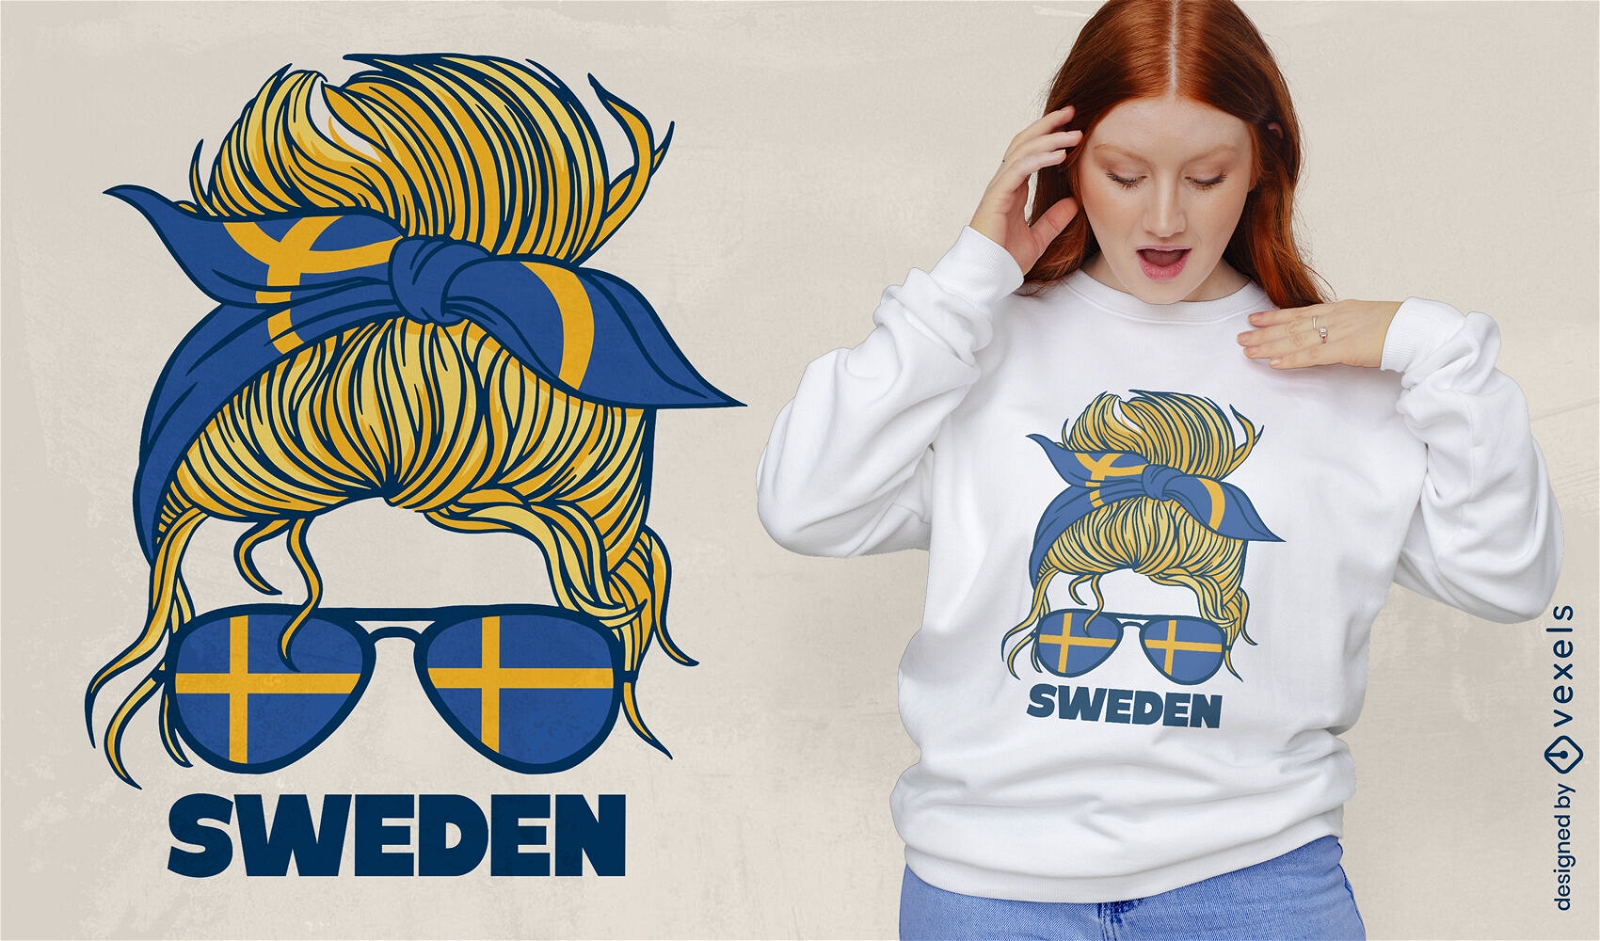 Sweden woman t-shirt design